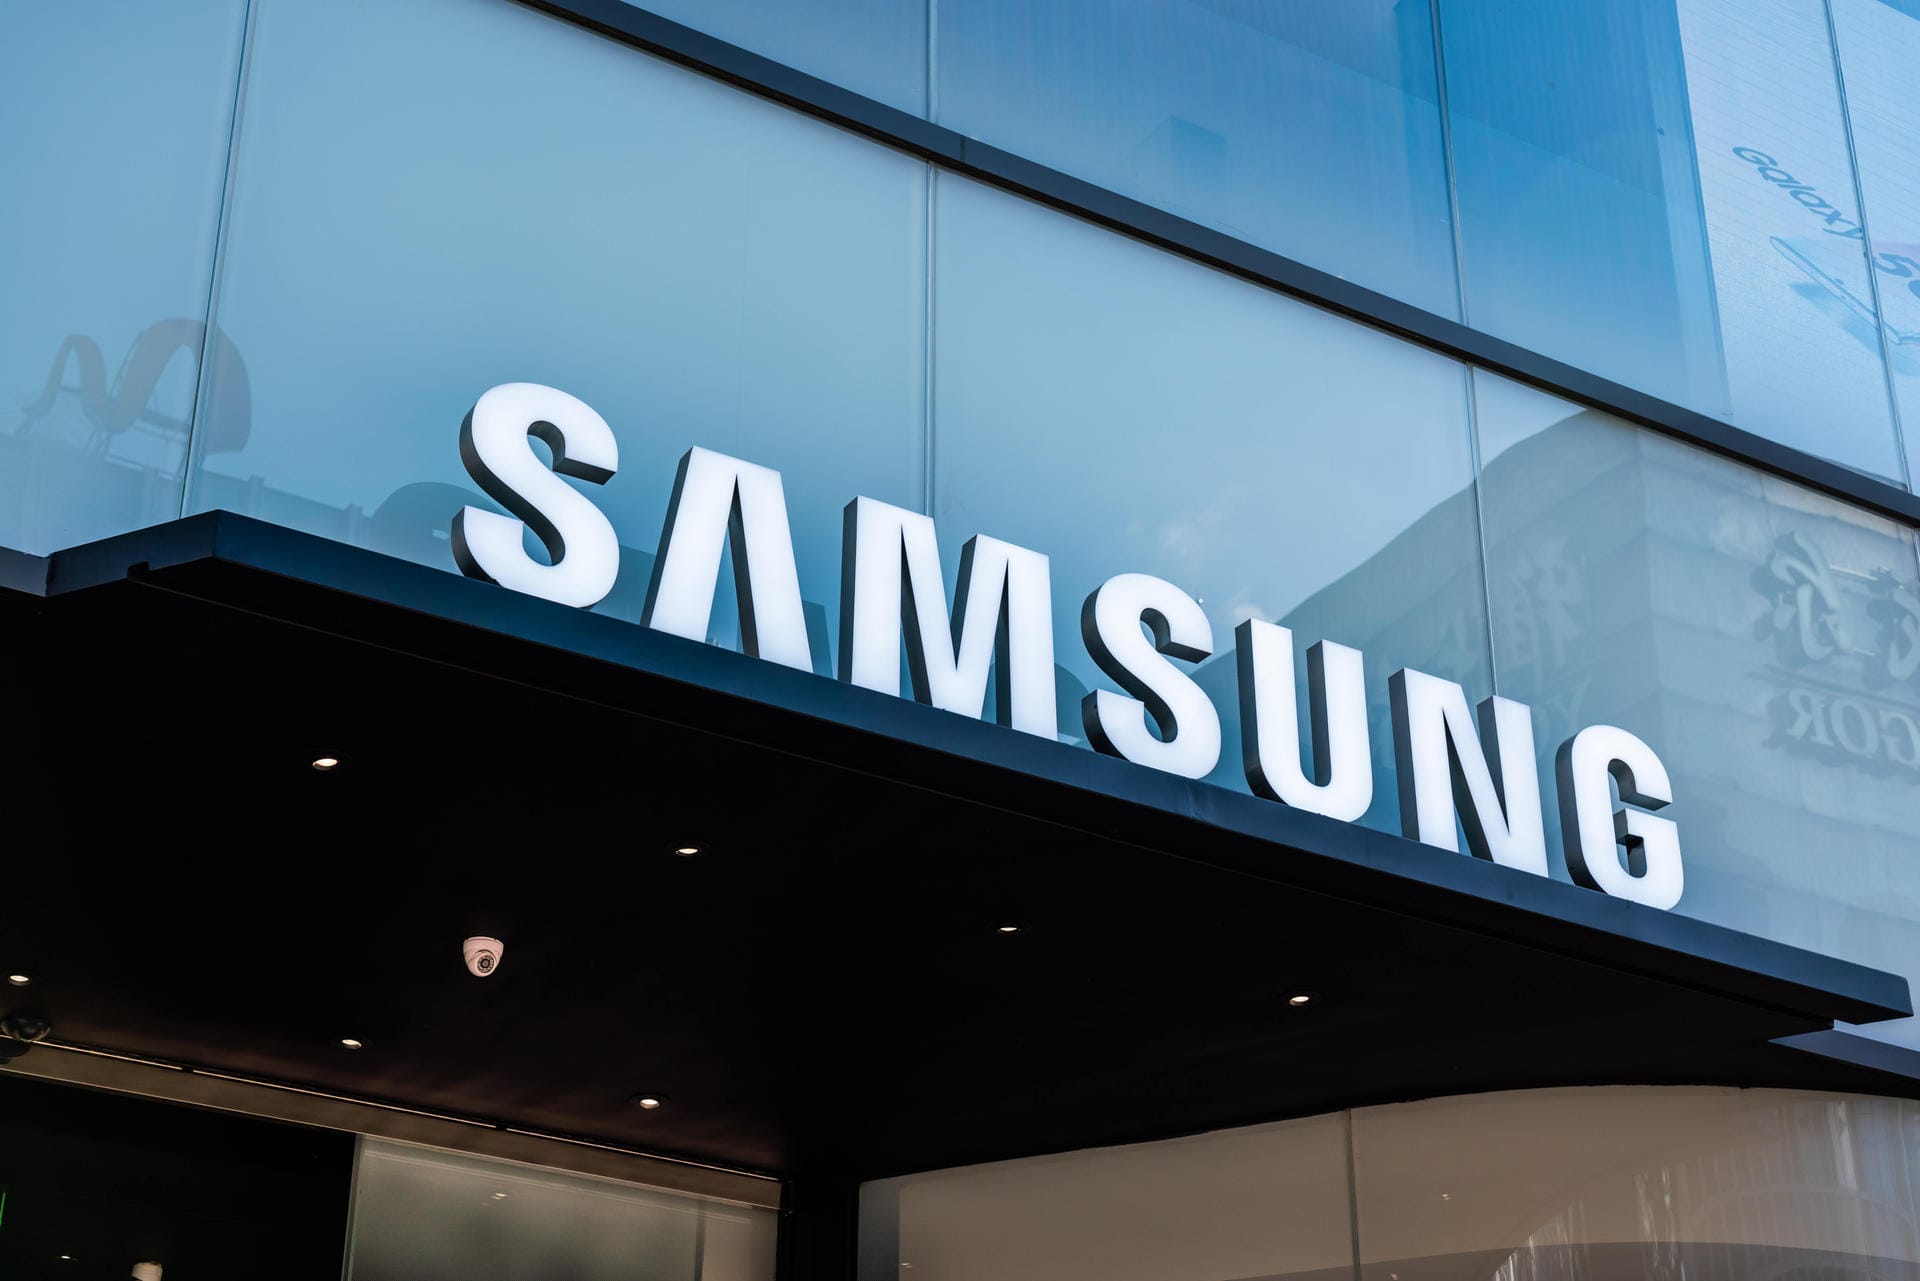 Samsung liegt mit rund 61 Milliarden Dollar Markenwert auf Platz 6.